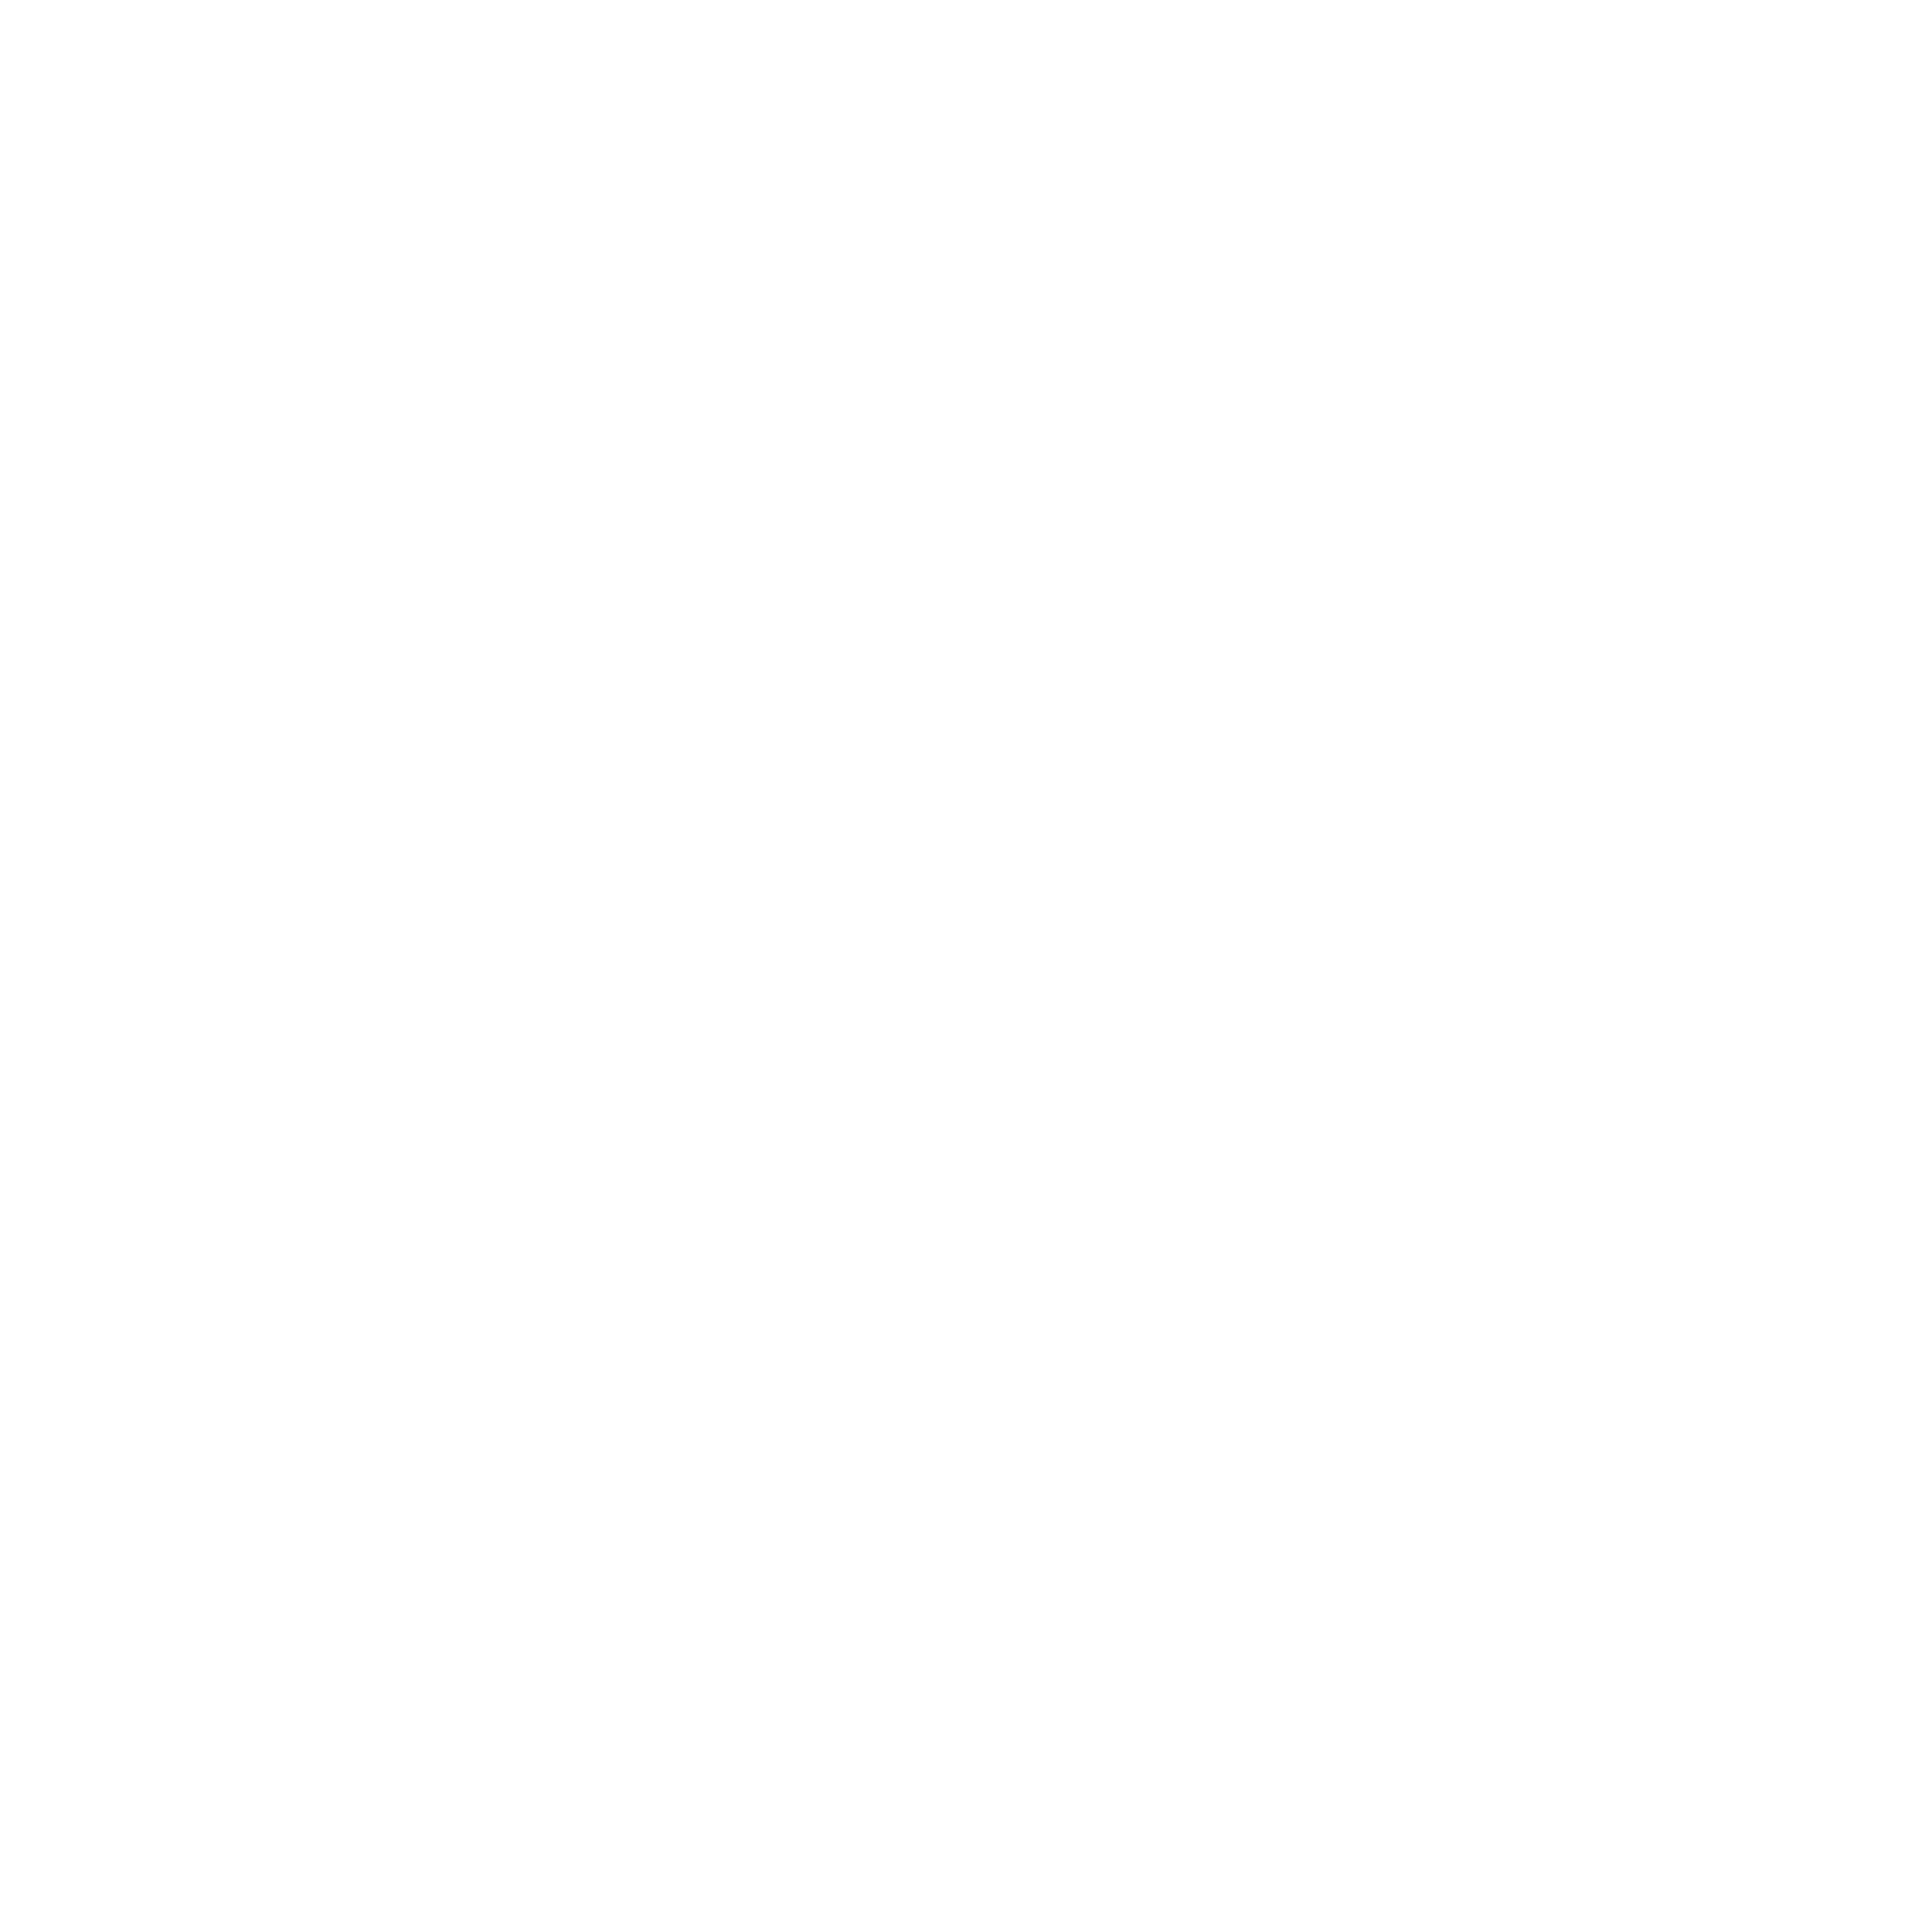 Joburg Logos for Web 2022 SAMARA sq